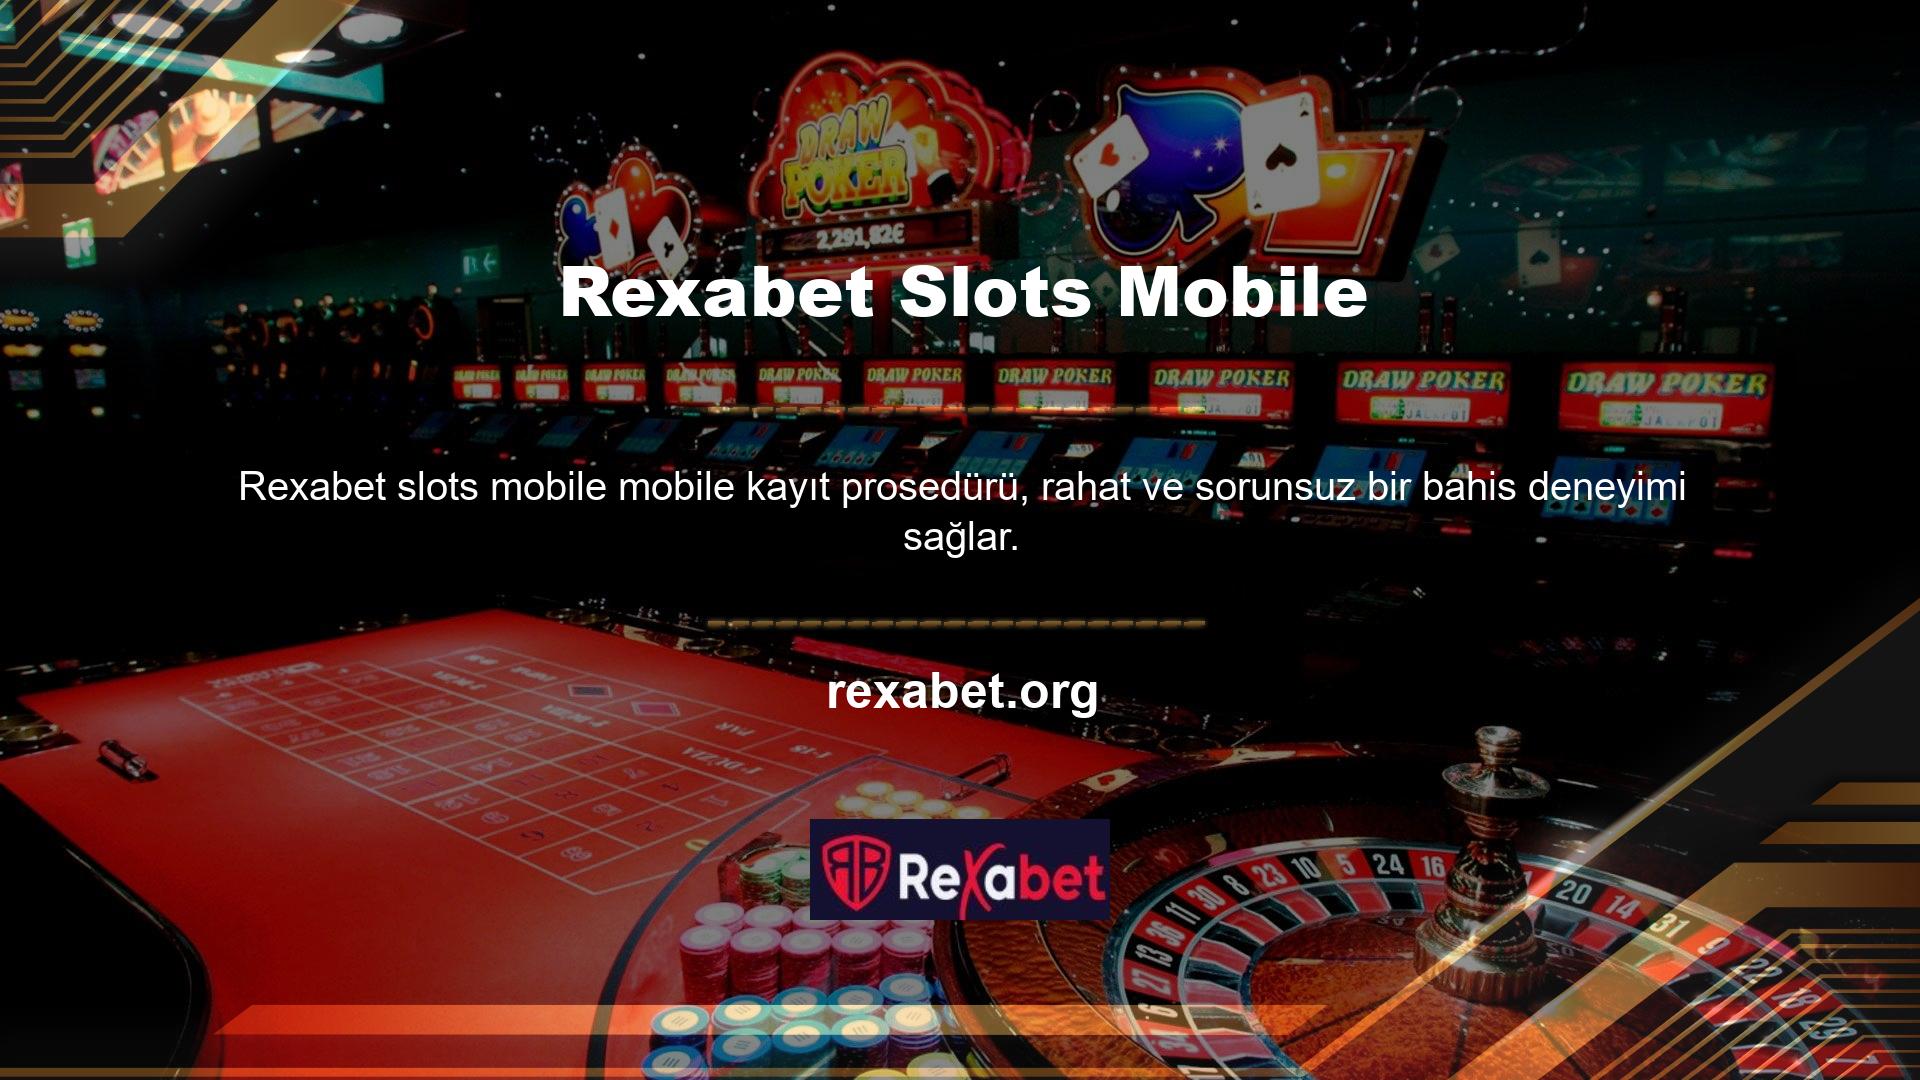 Kullanıcılar mobil sistemlerin yanı sıra masaüstü versiyondan da sisteme giriş yaparak Rexabet platformundan faydalanabilmektedir